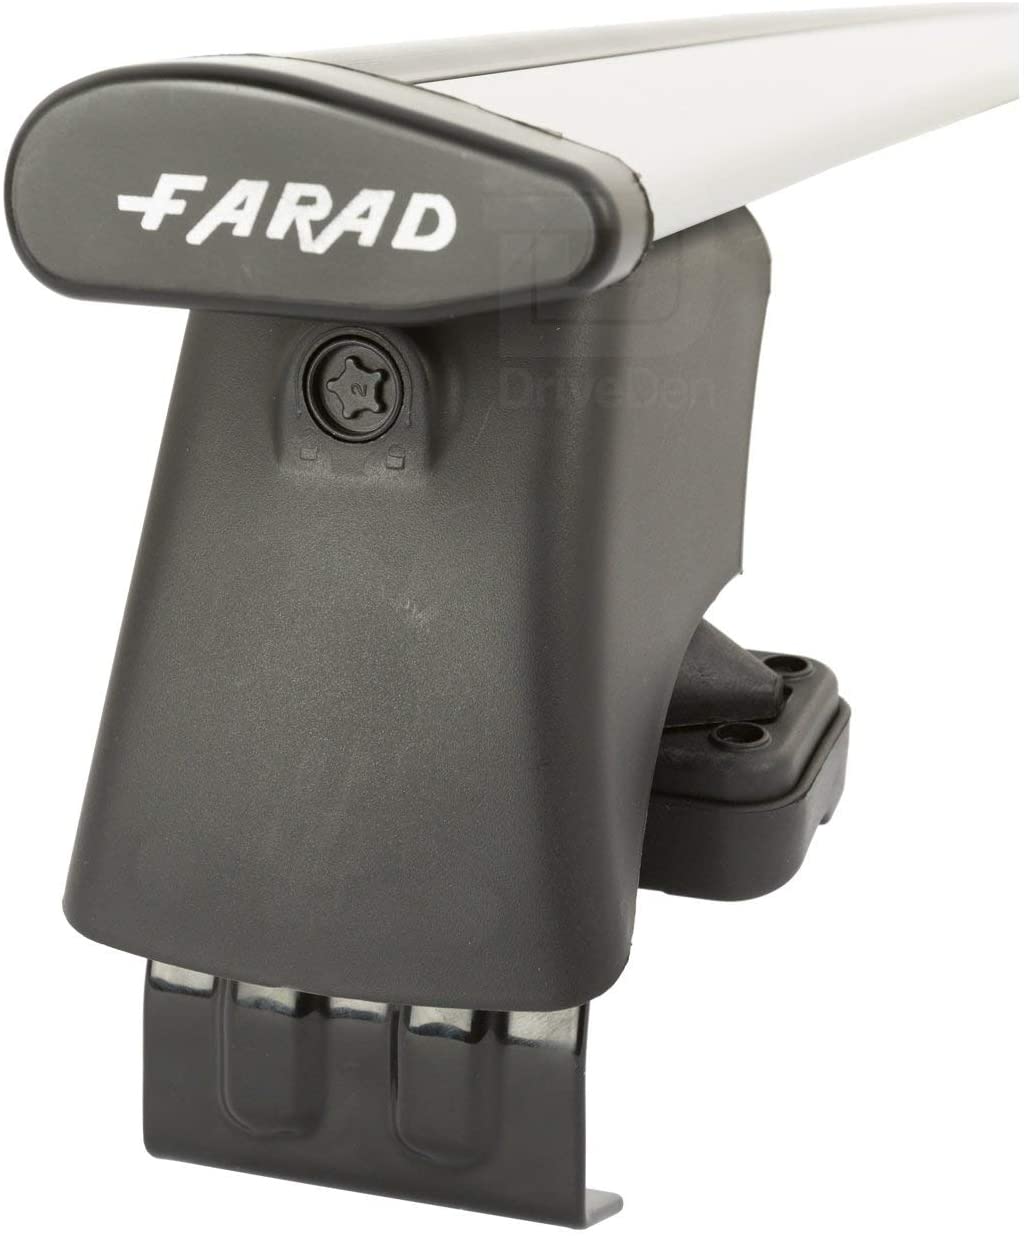 FARAD-Kit H2 per barre portatutto - Volkswagen Golf Plus 2005-2014 (senza corrimano)